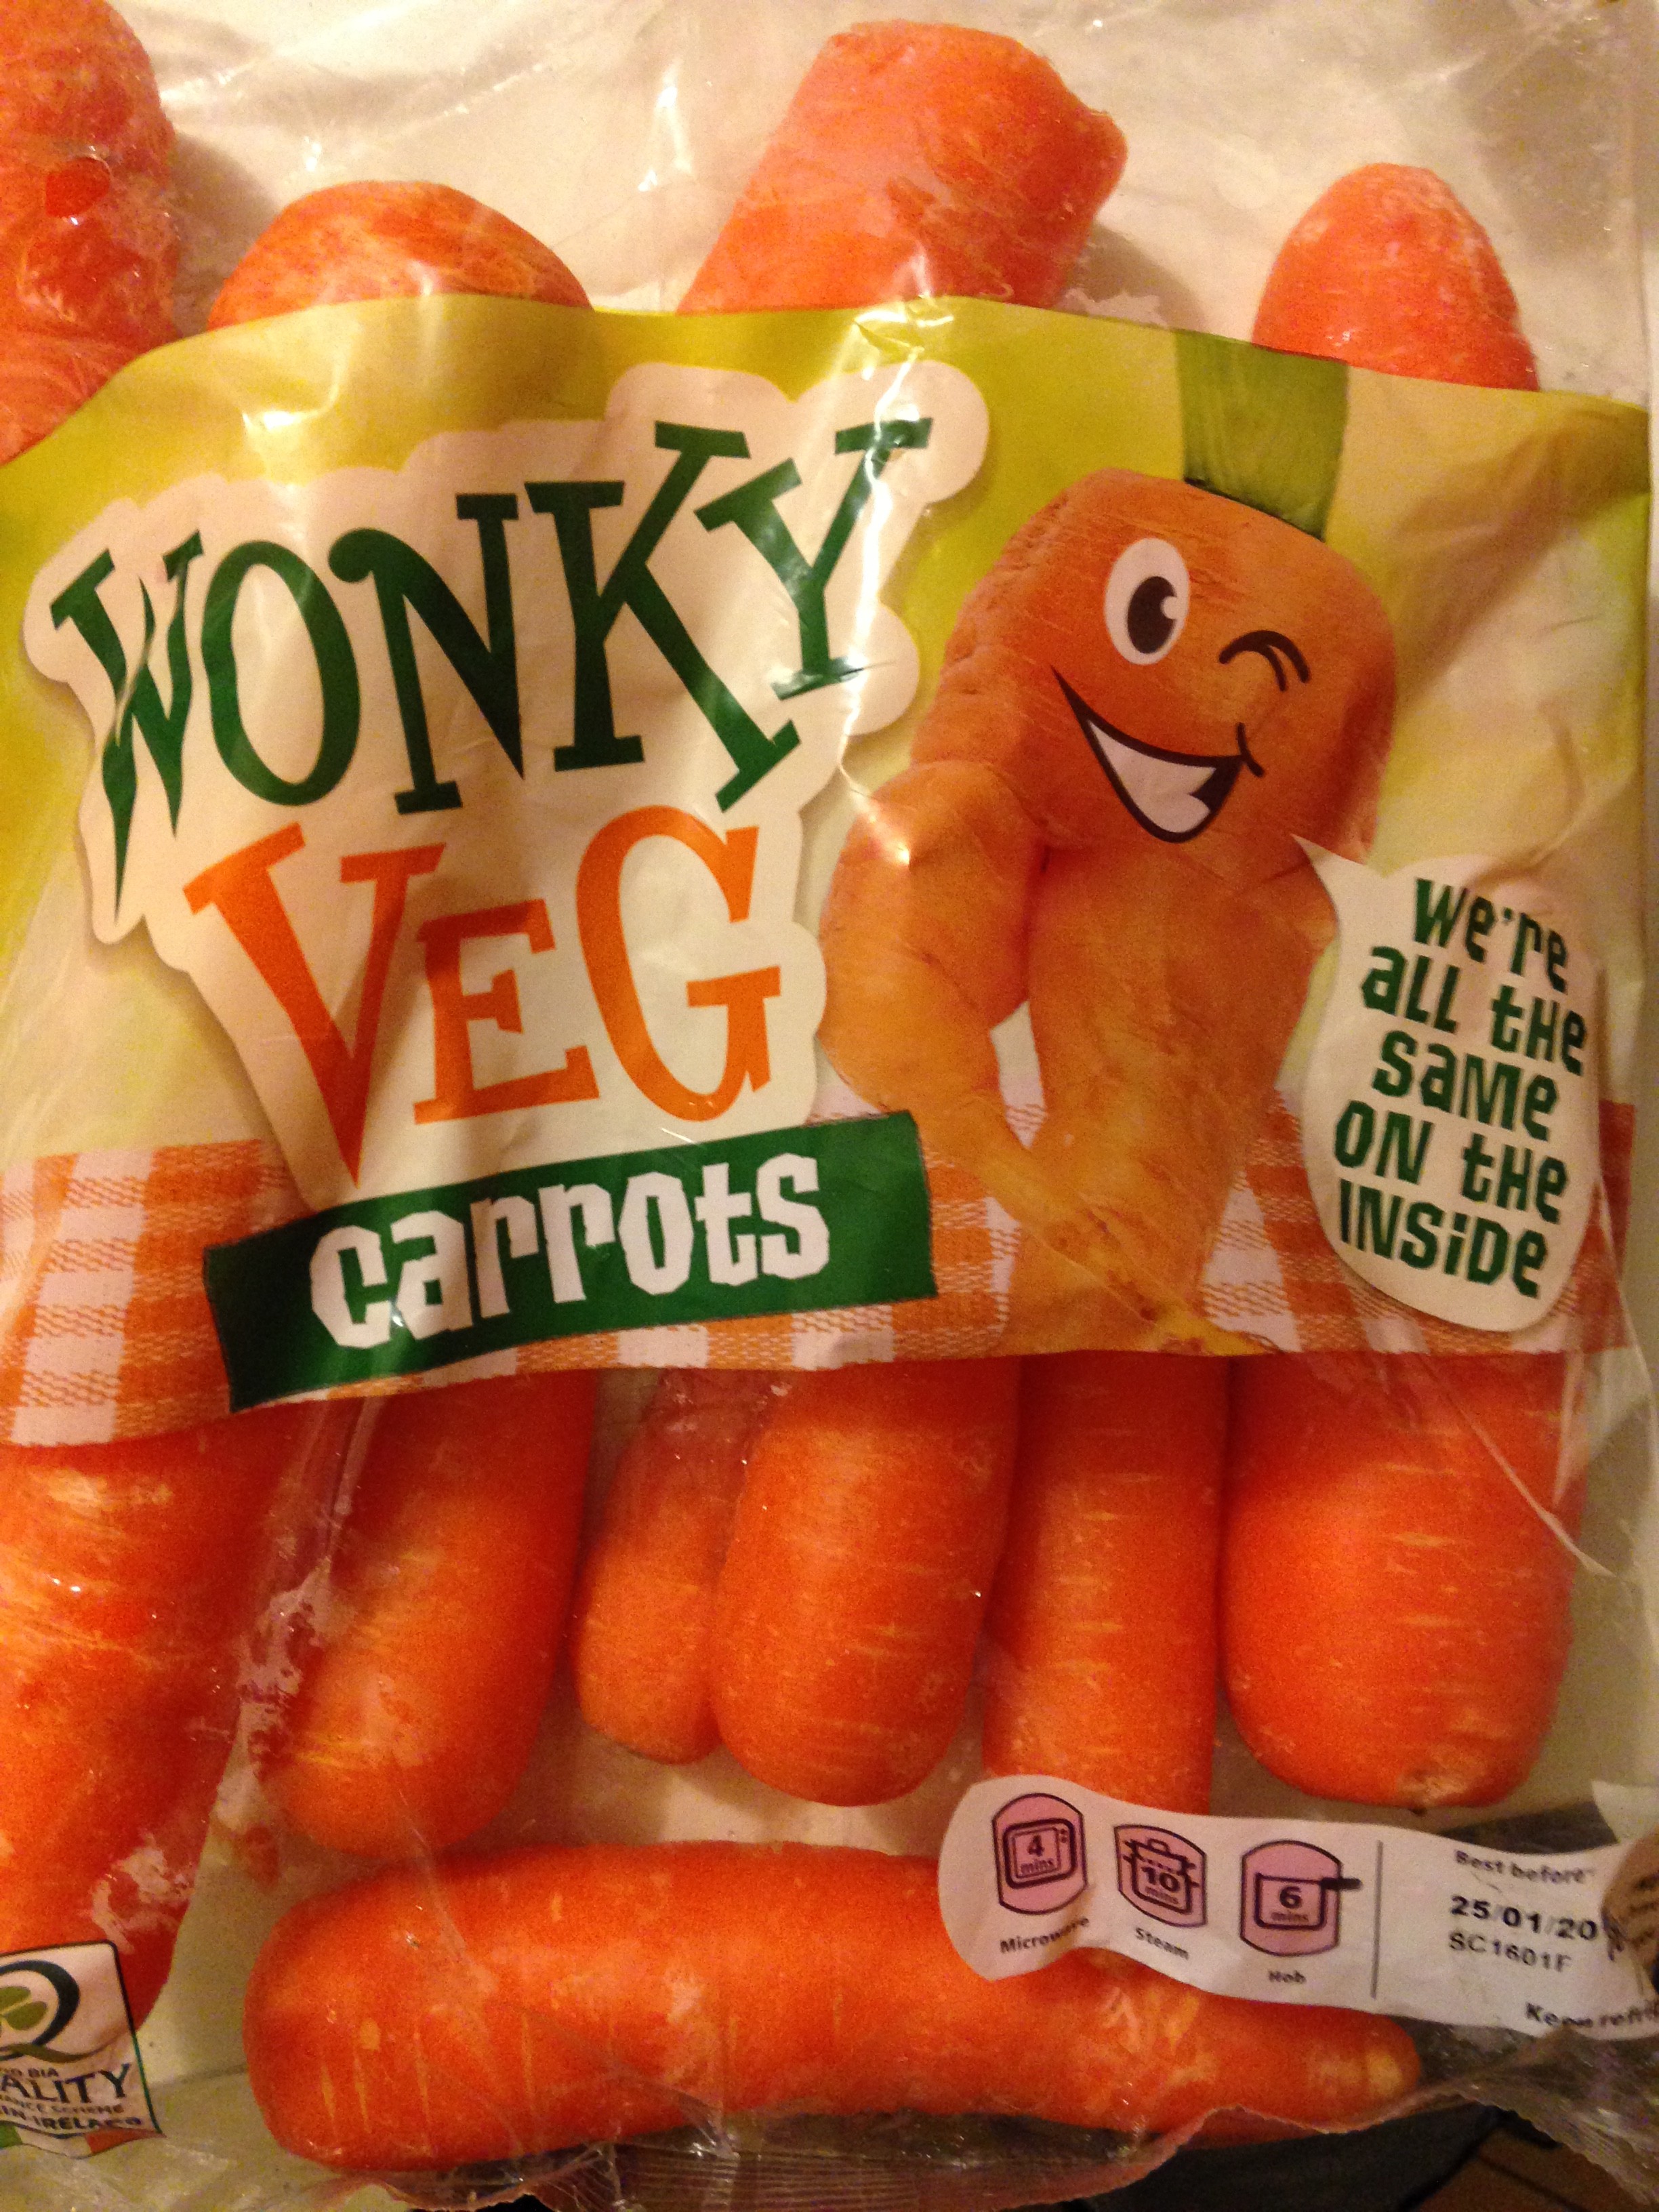 Wonky veg, légumes moches